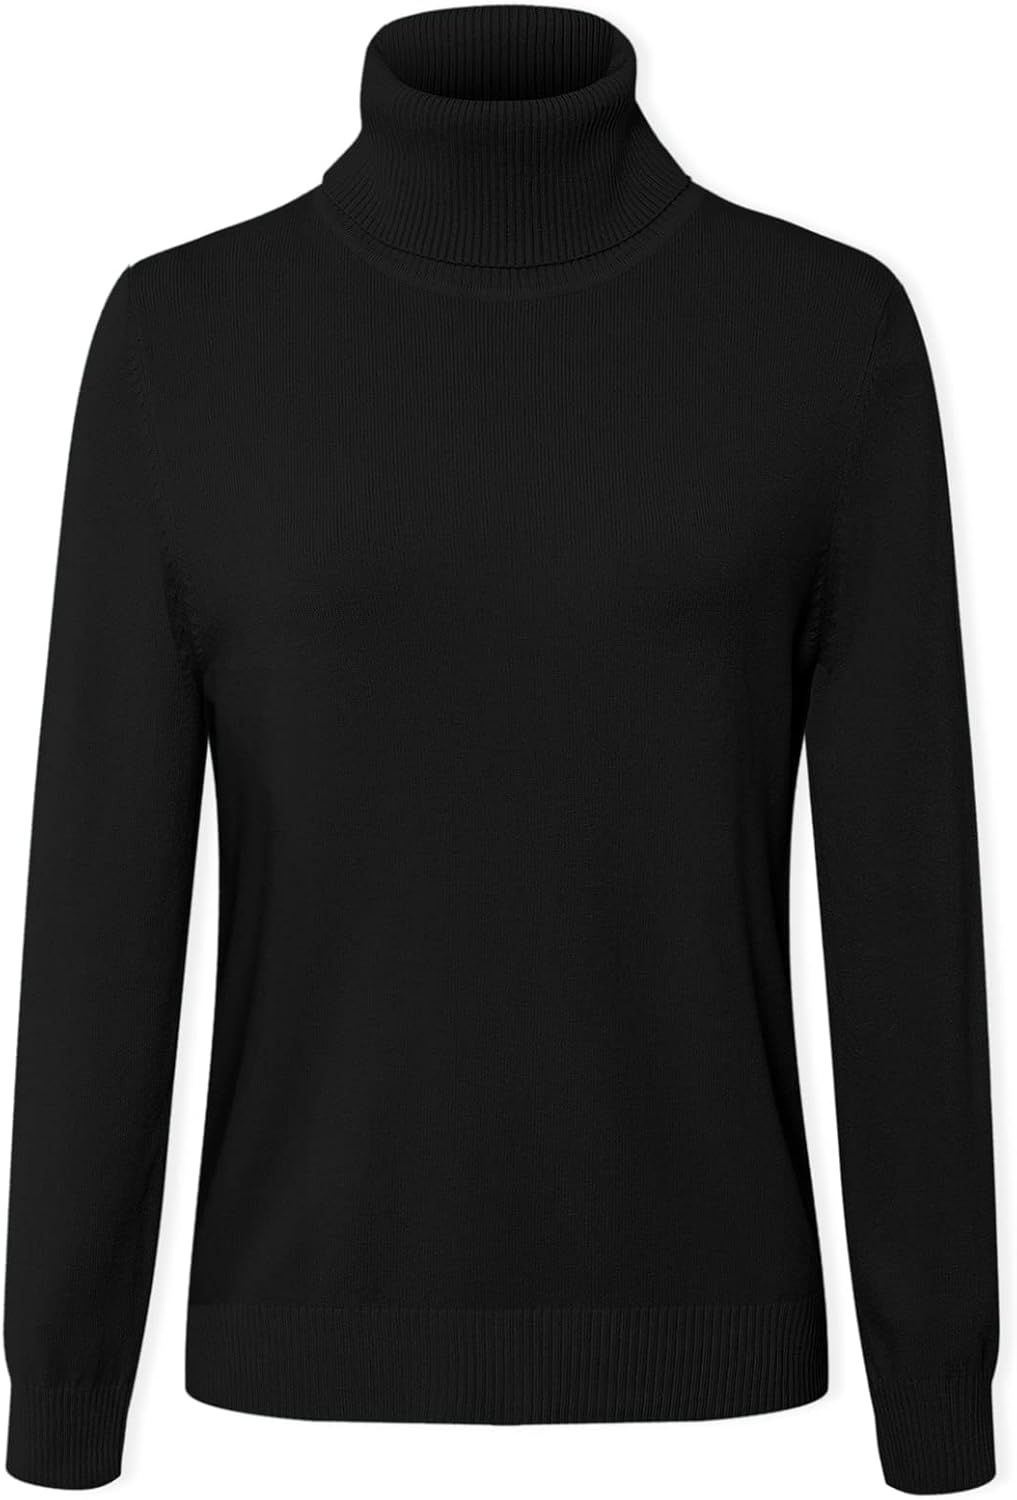 DAIMIDY Women's Long-Sleeve Turtleneck Sweater | Amazon (US)